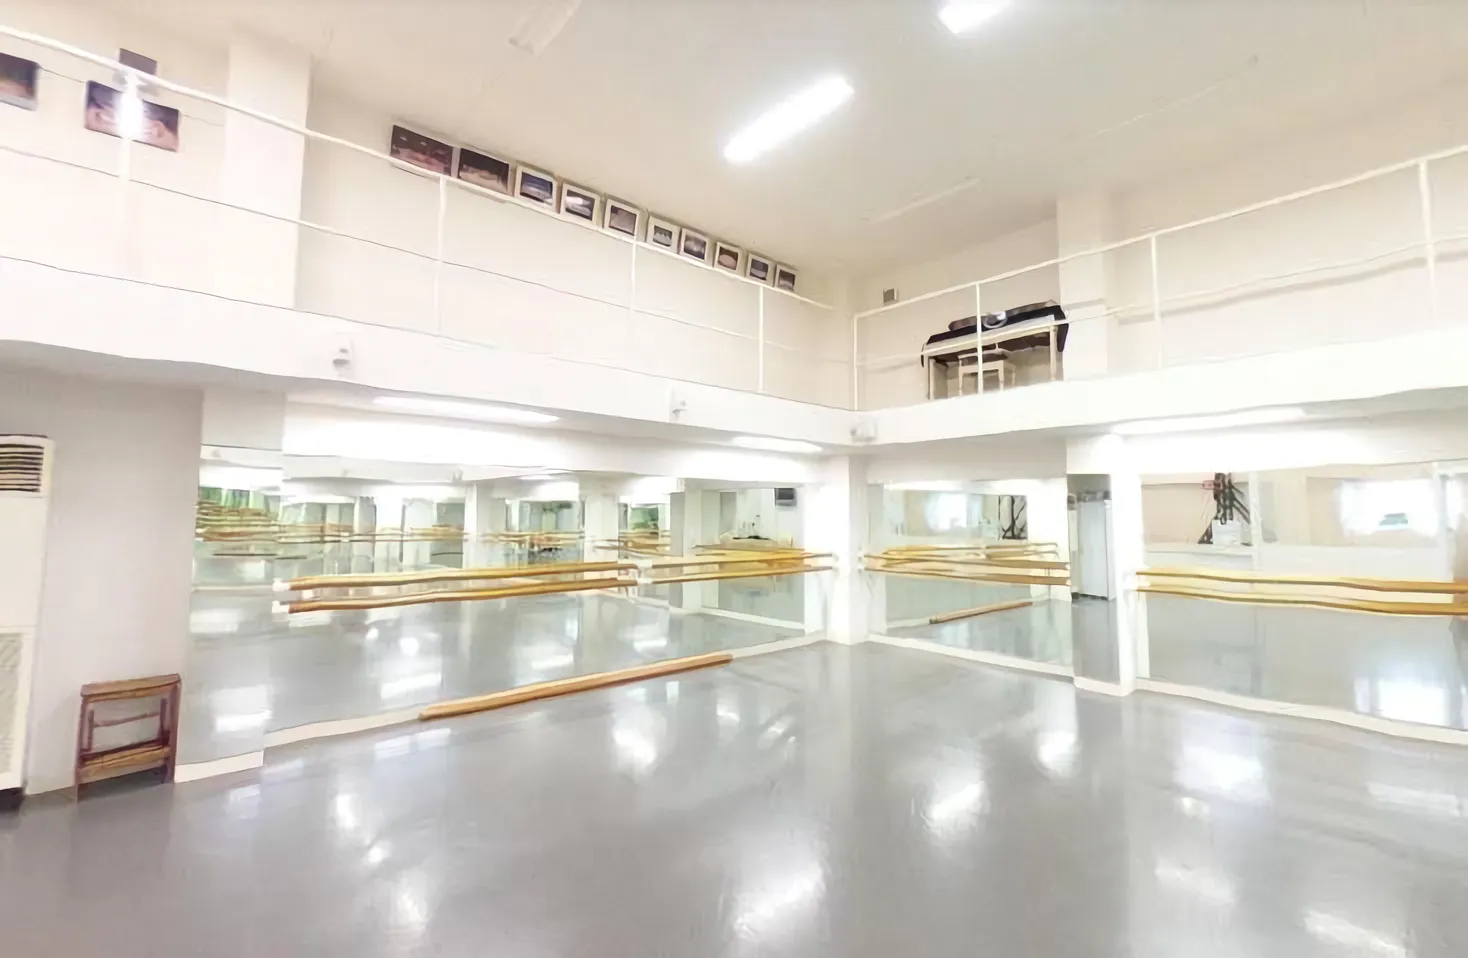 【大阪市】バレエスタジオの施設をご紹介致します。